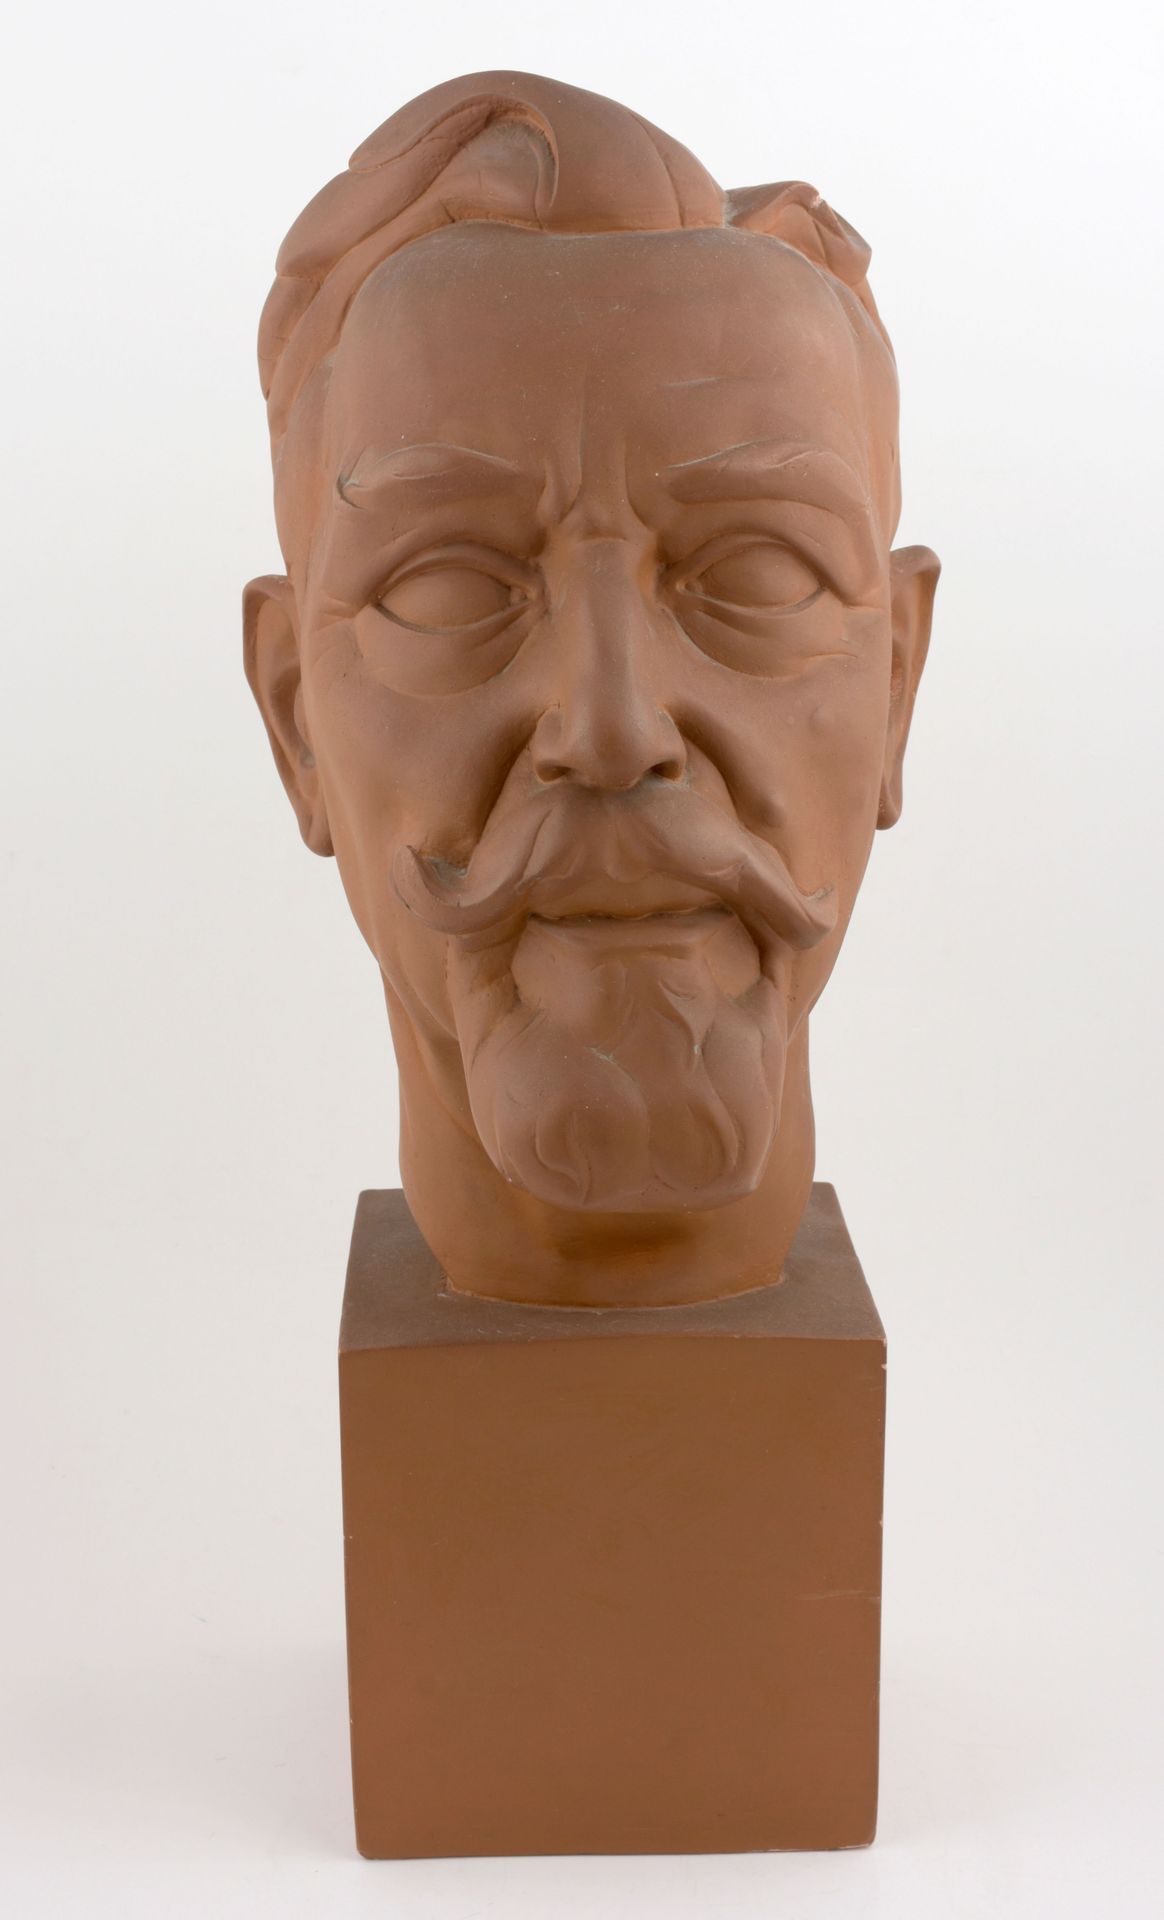 POELS, Albert (1903-1984) Busto di Ernest Claes

(1955) Plaasteren kop, terracot&hellip;